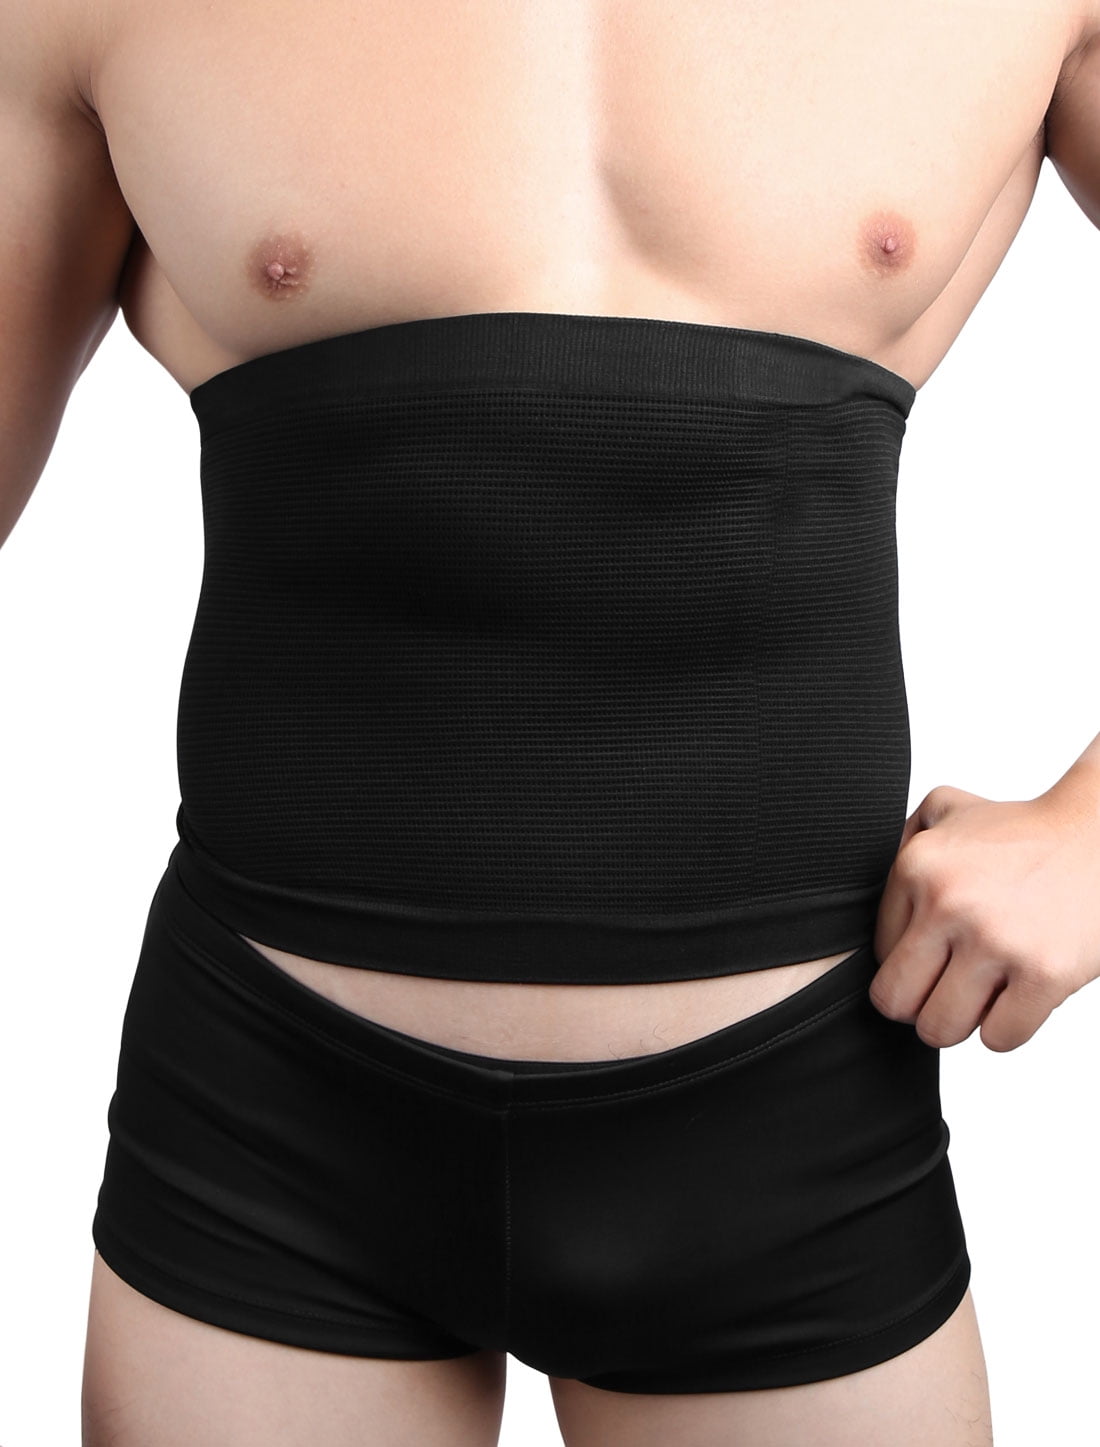 L Men Underclothes Slimming Waist Trimmer Belt Abdomen Belly Girdle 